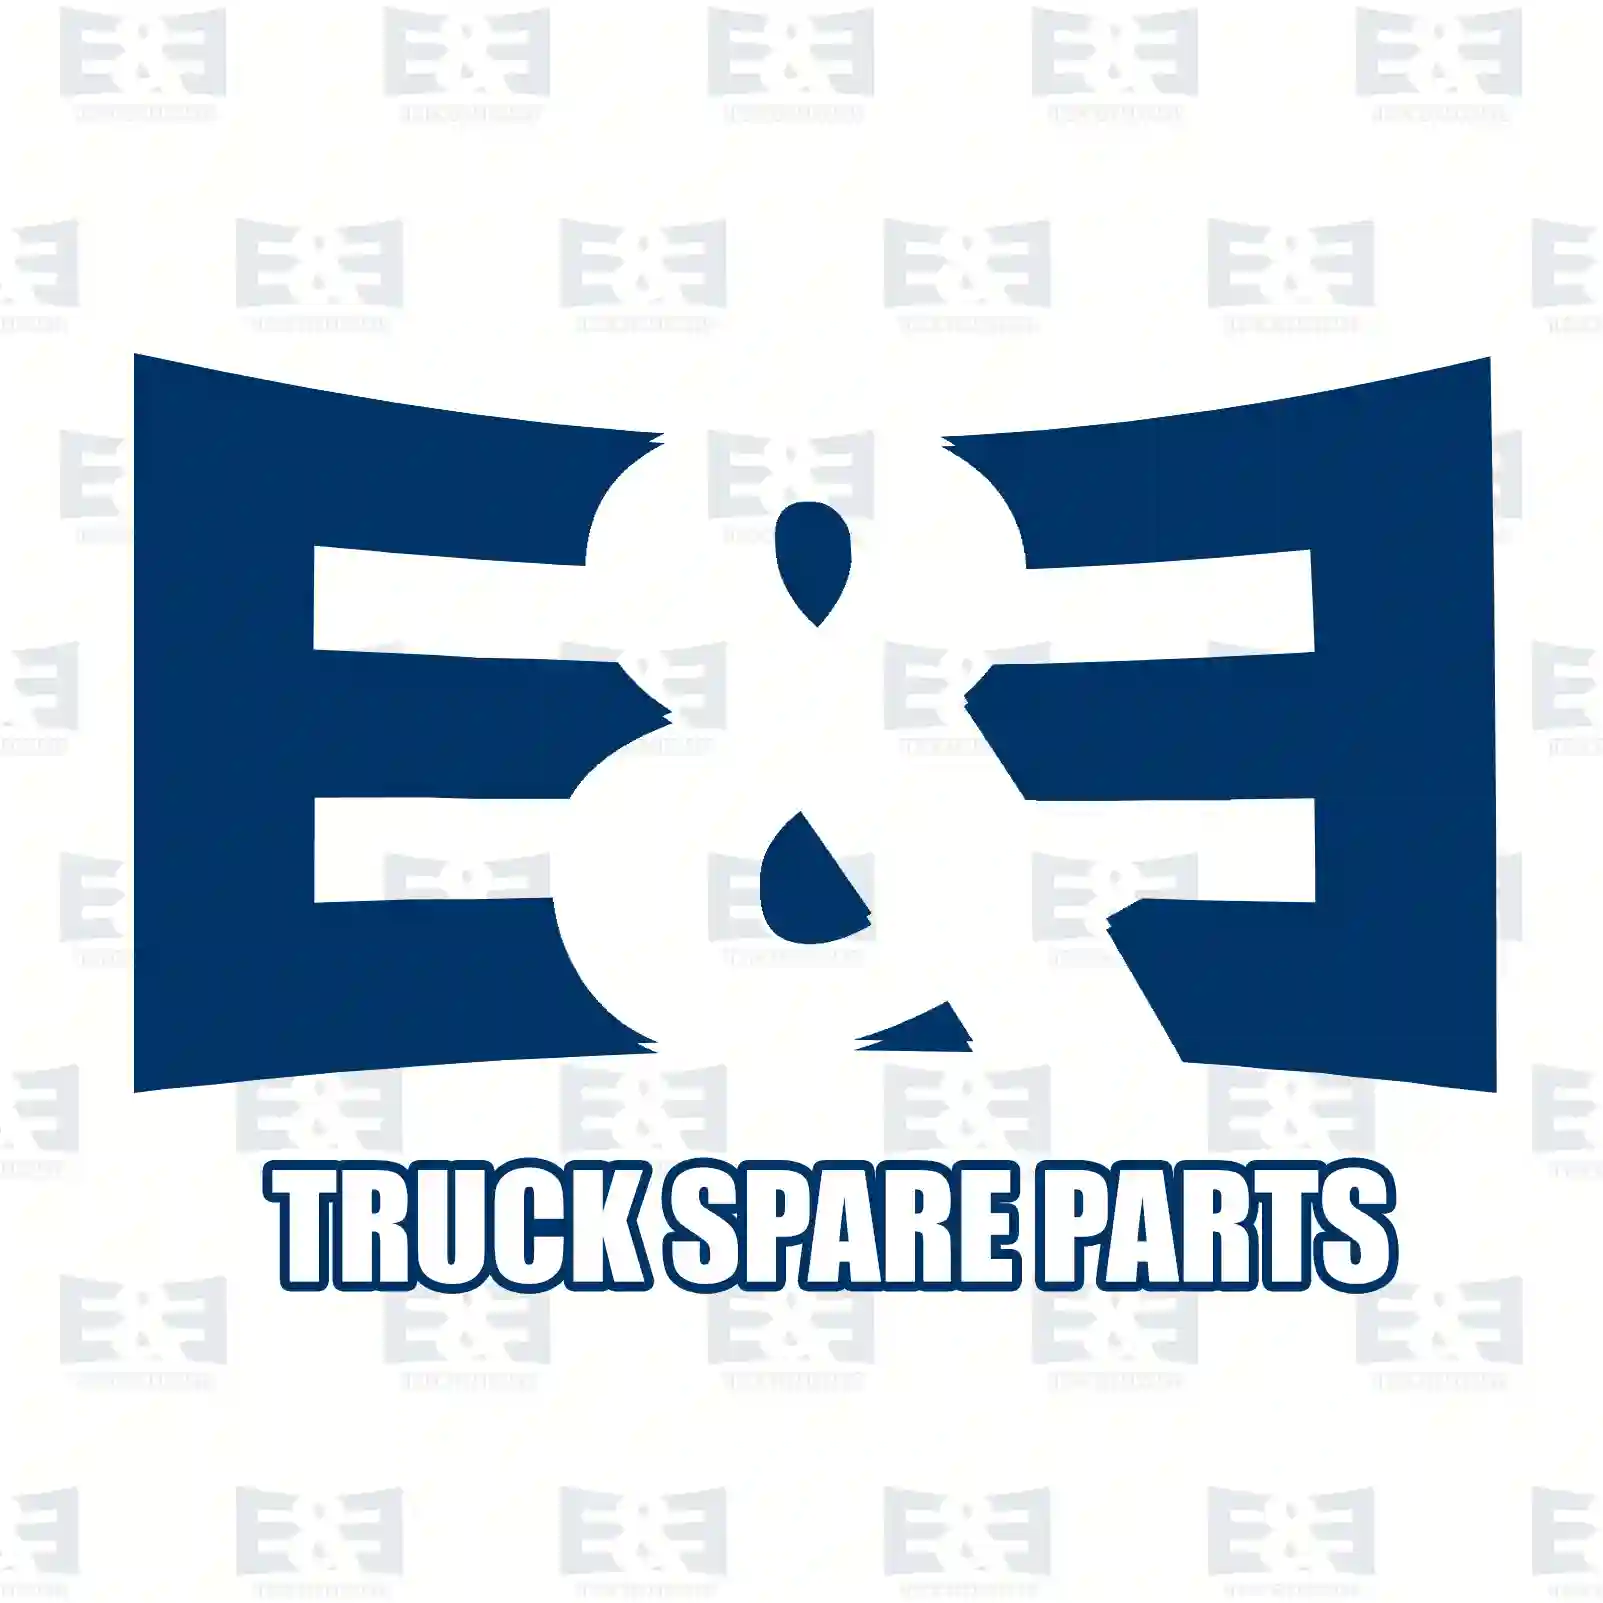 Step well case, right, 2E2292728, 81615100710, 81615100830, 81615100920 ||  2E2292728 E&E Truck Spare Parts | Truck Spare Parts, Auotomotive Spare Parts Step well case, right, 2E2292728, 81615100710, 81615100830, 81615100920 ||  2E2292728 E&E Truck Spare Parts | Truck Spare Parts, Auotomotive Spare Parts